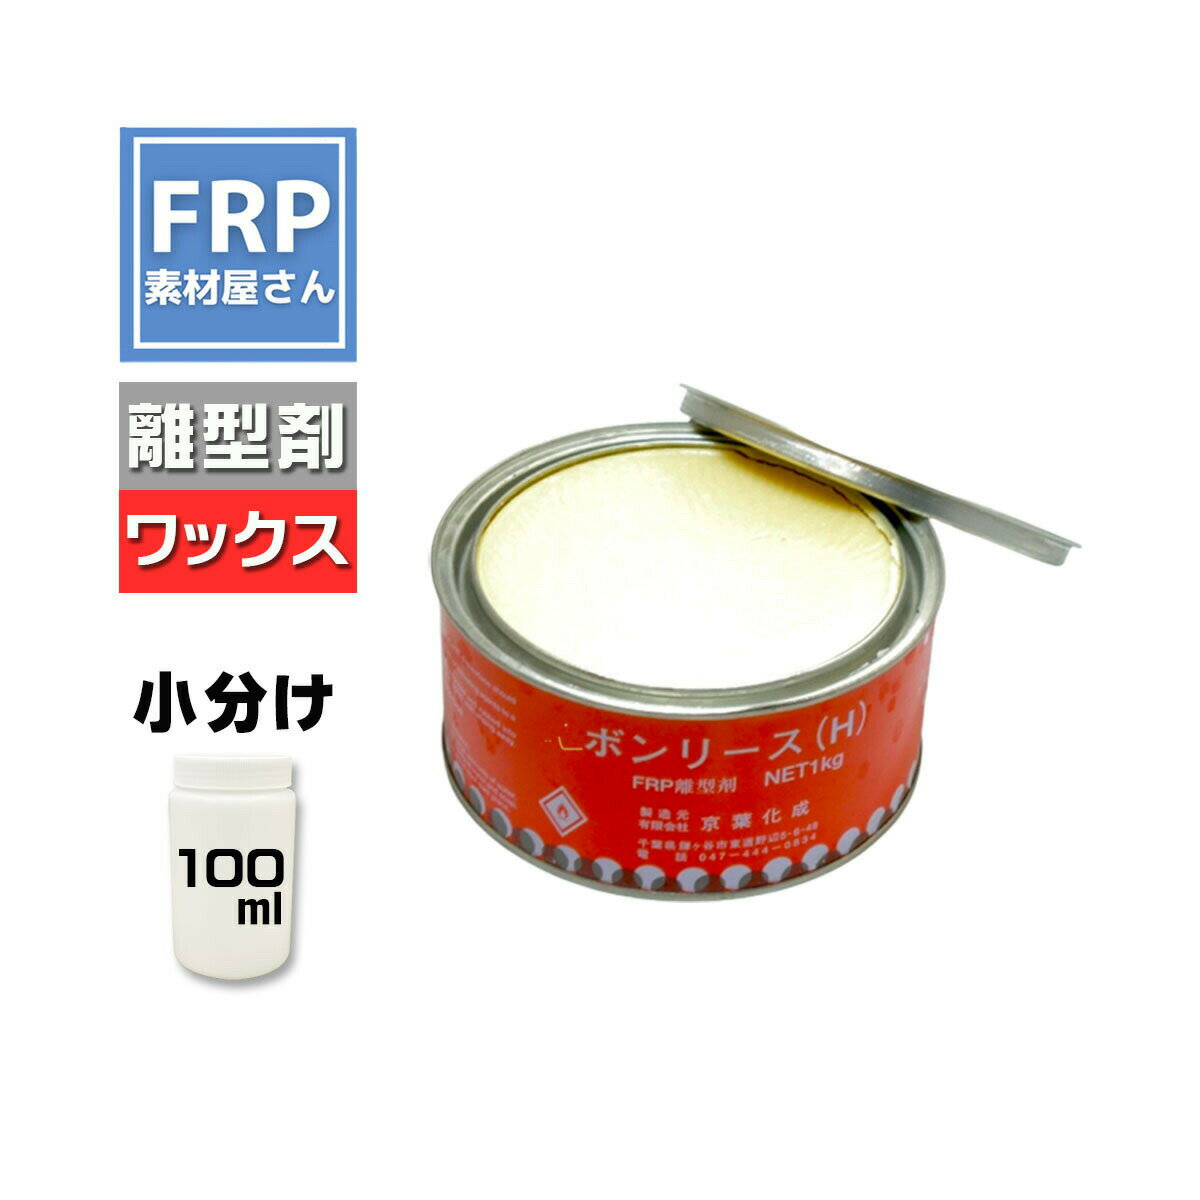 FRP ワックス離型剤【ボンリースH (100g)】/FRP樹脂 剥離剤 型取り ワックスタイプ